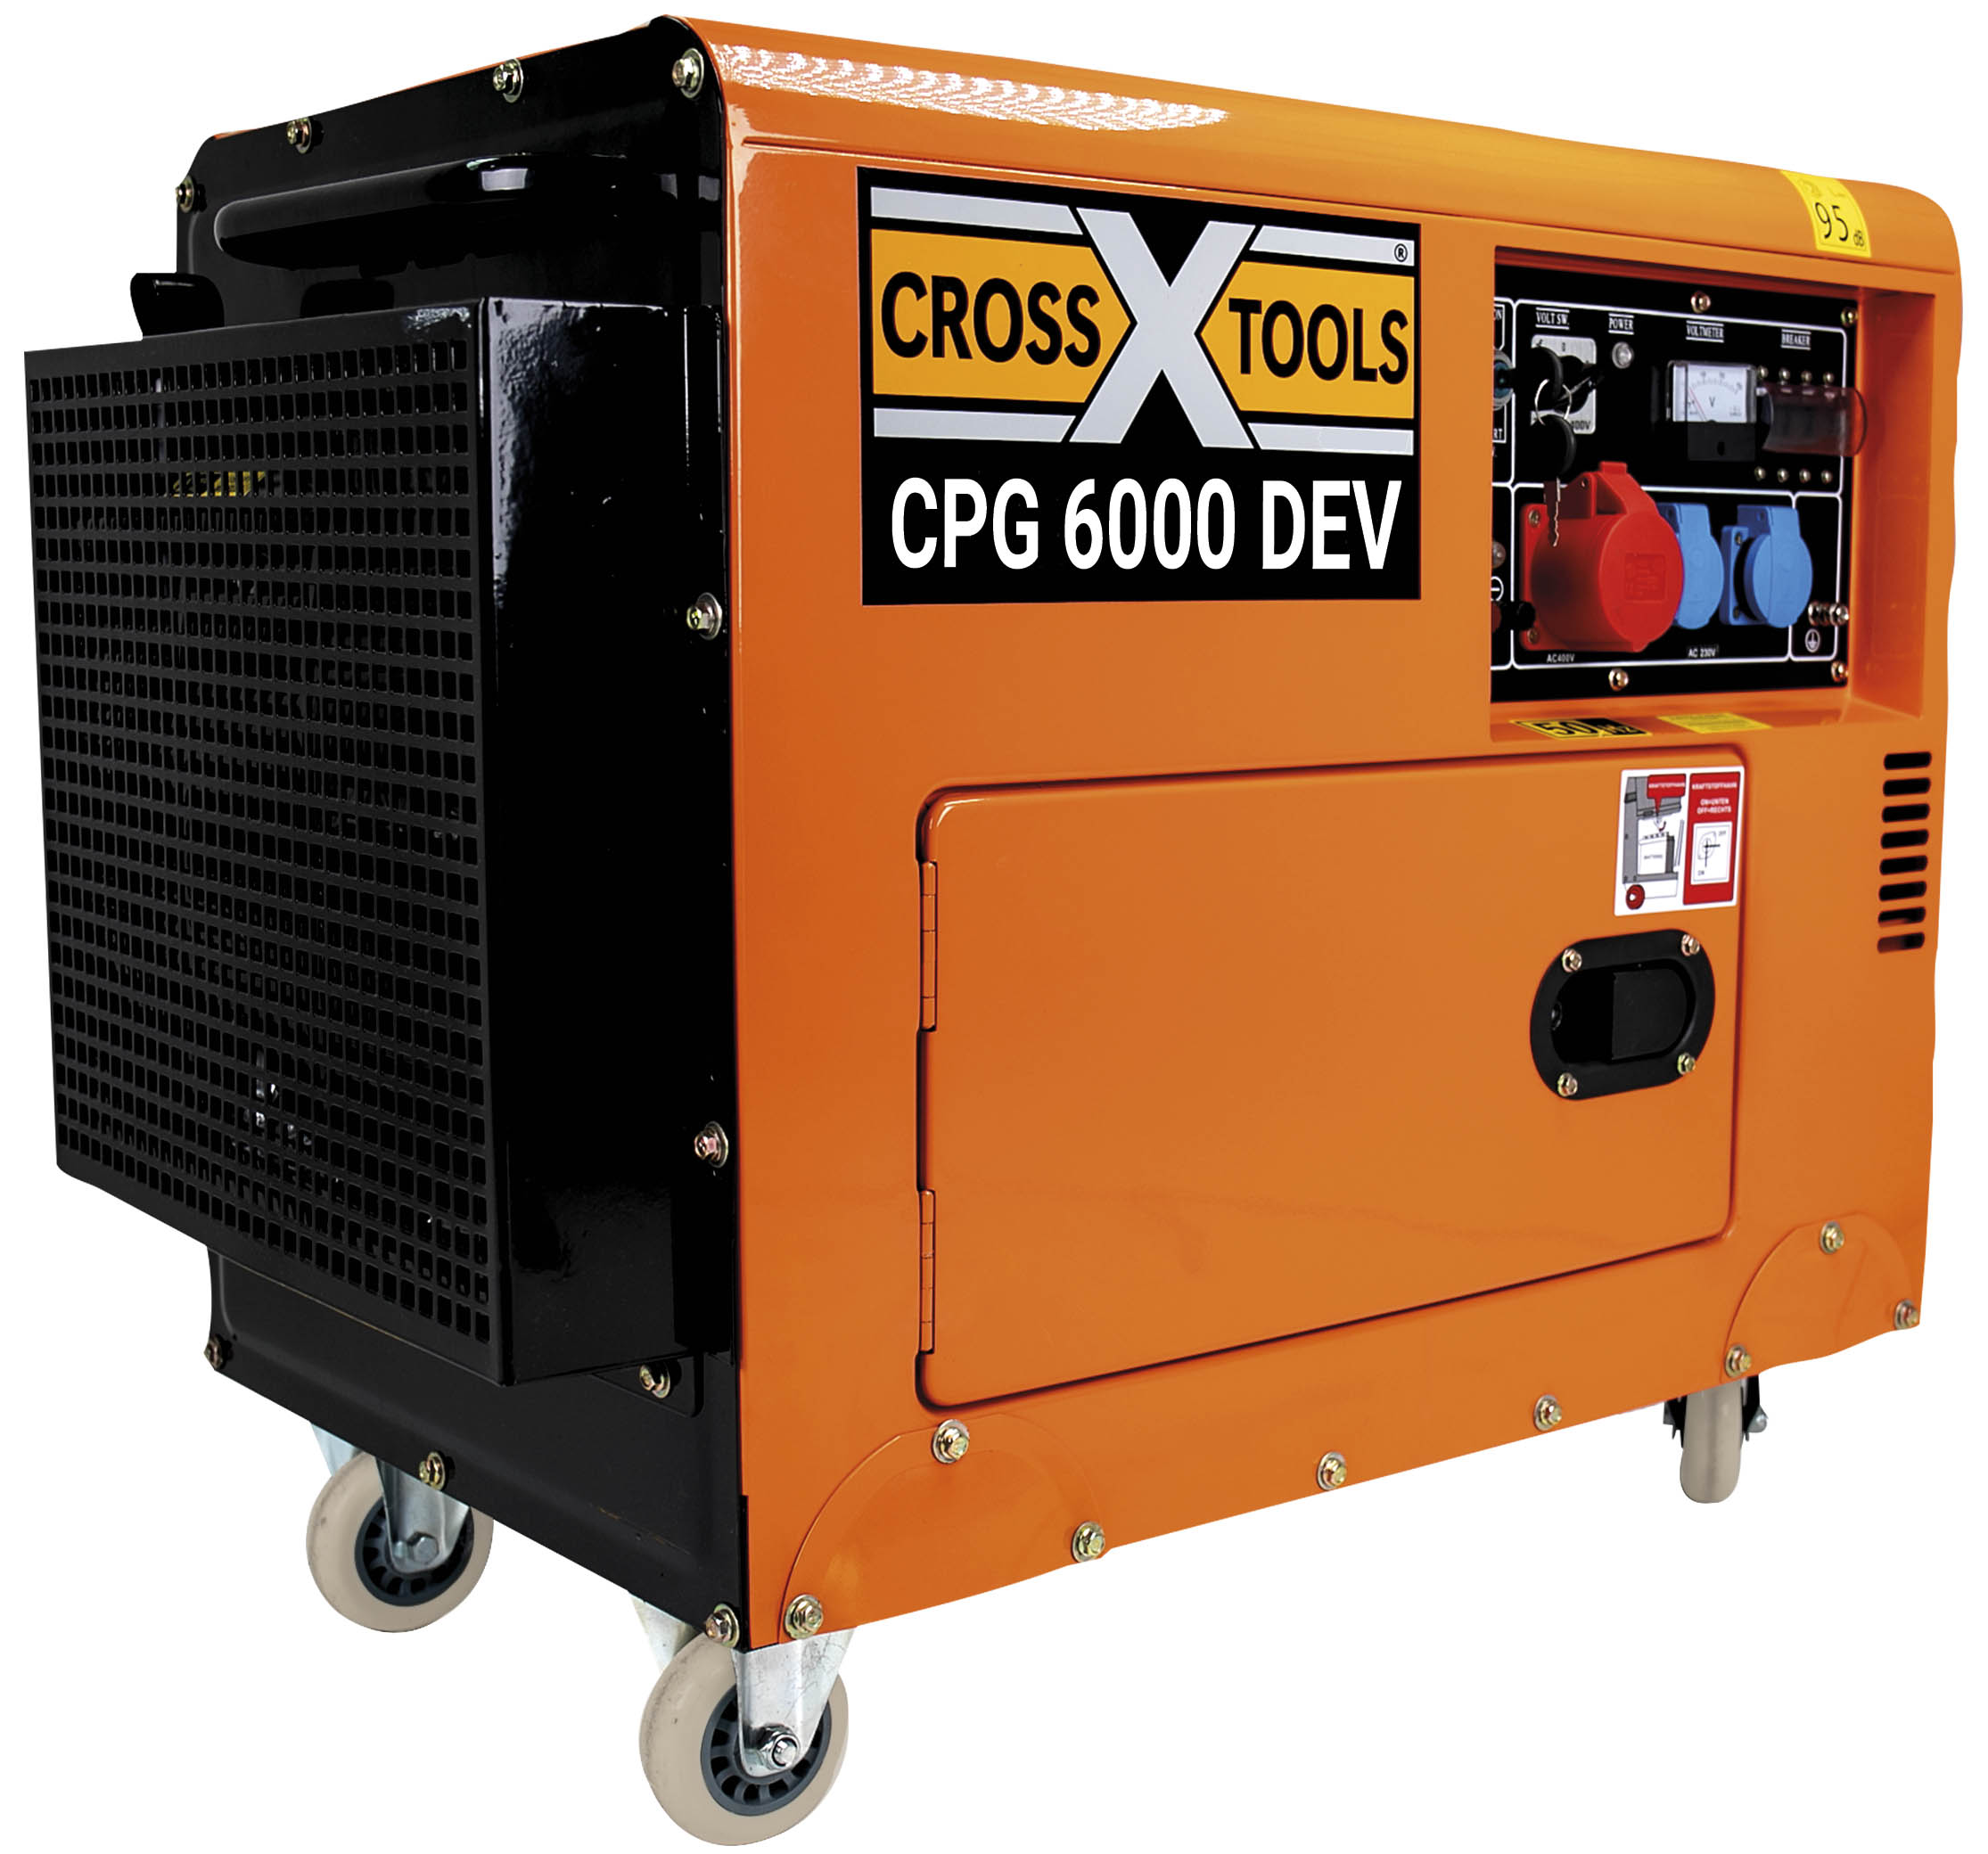 Diesel-Stromerzeuger CPG 6000 DEV